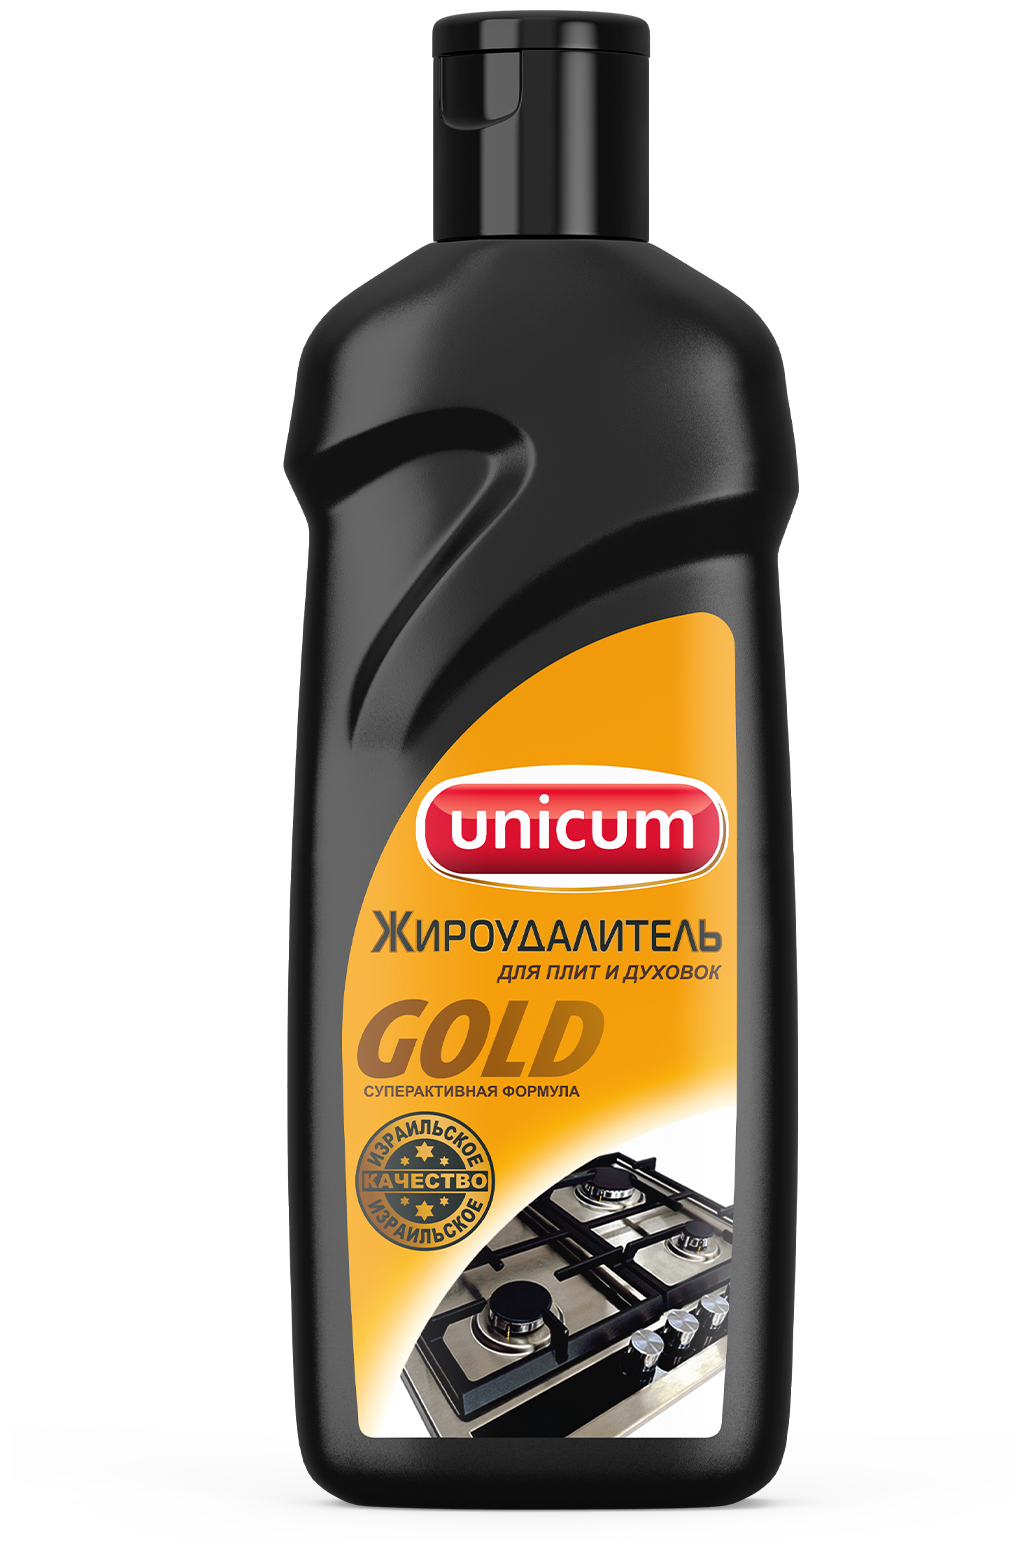 Жироудалитель для плит и духовок Gold Unicum